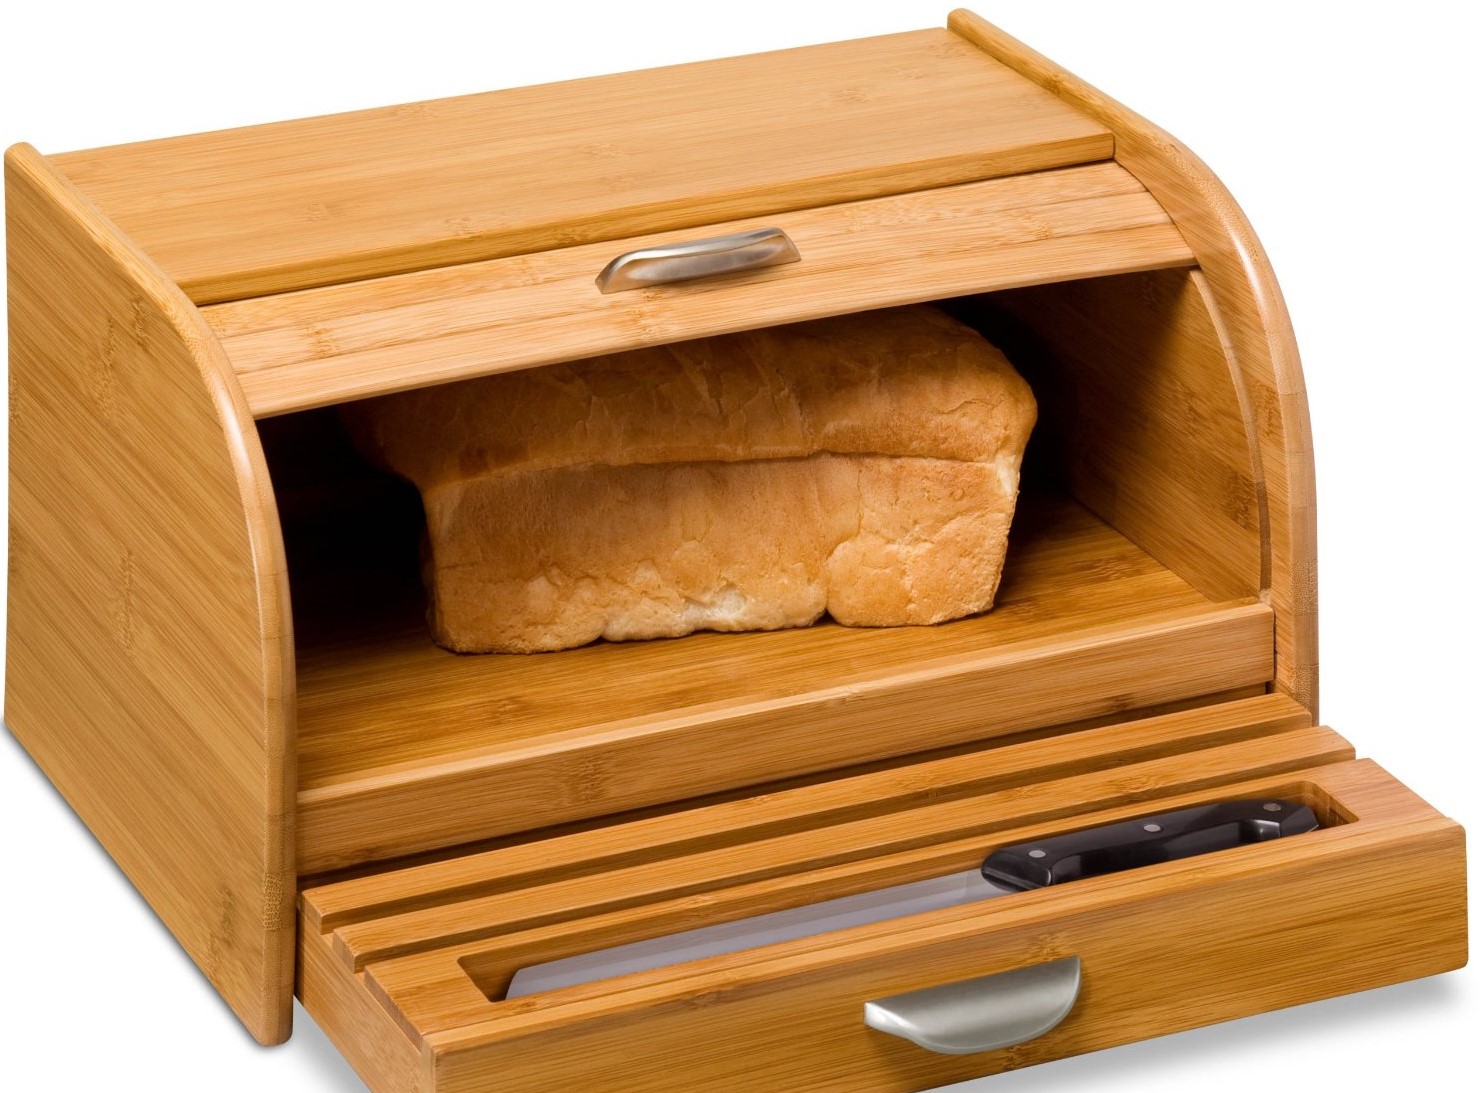 这个面包盒底部有一个内置的切菜板，可以像抽屉一样拉出来。它由竹饰面制成，还包括一个餐具罐。